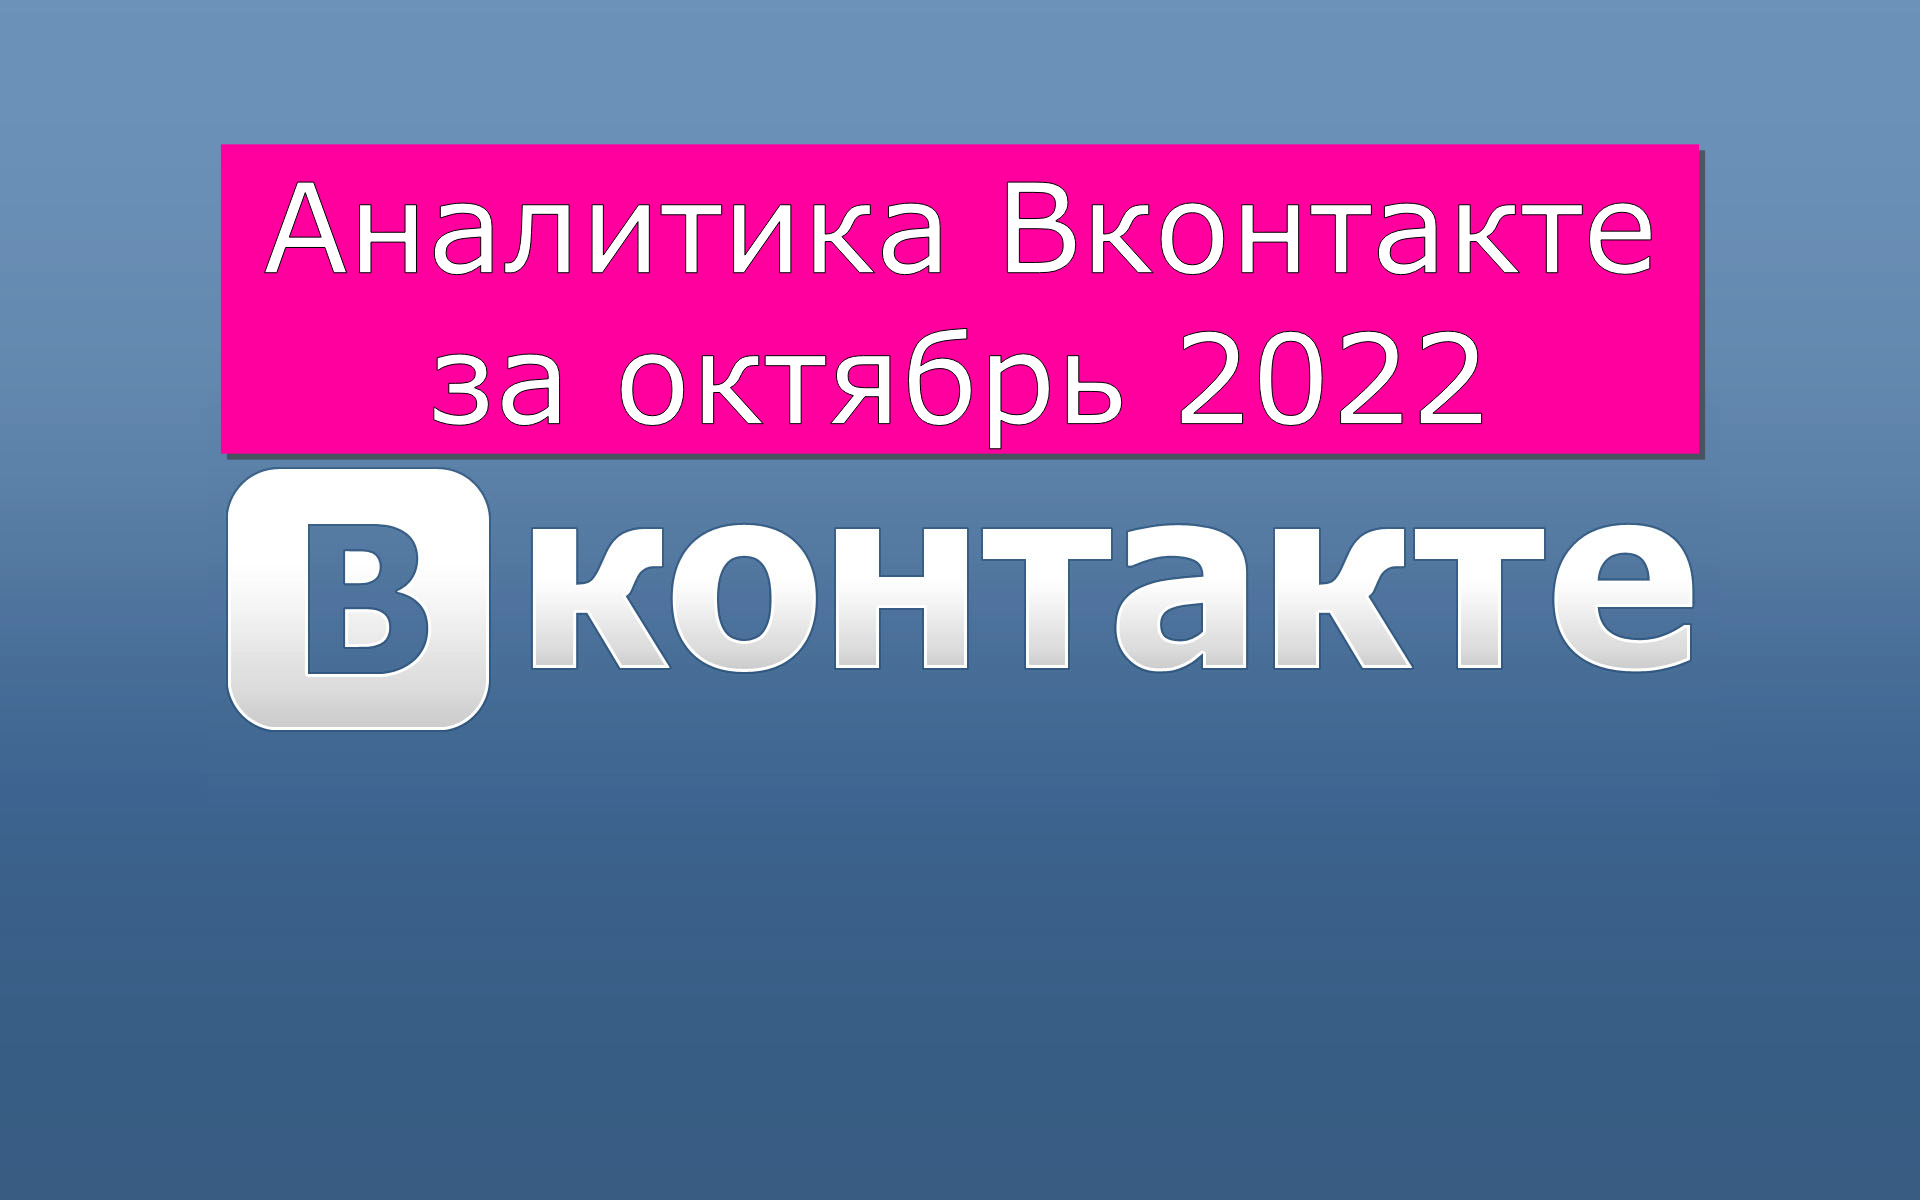 Аналитика ВКонтакте за октябрь 2022